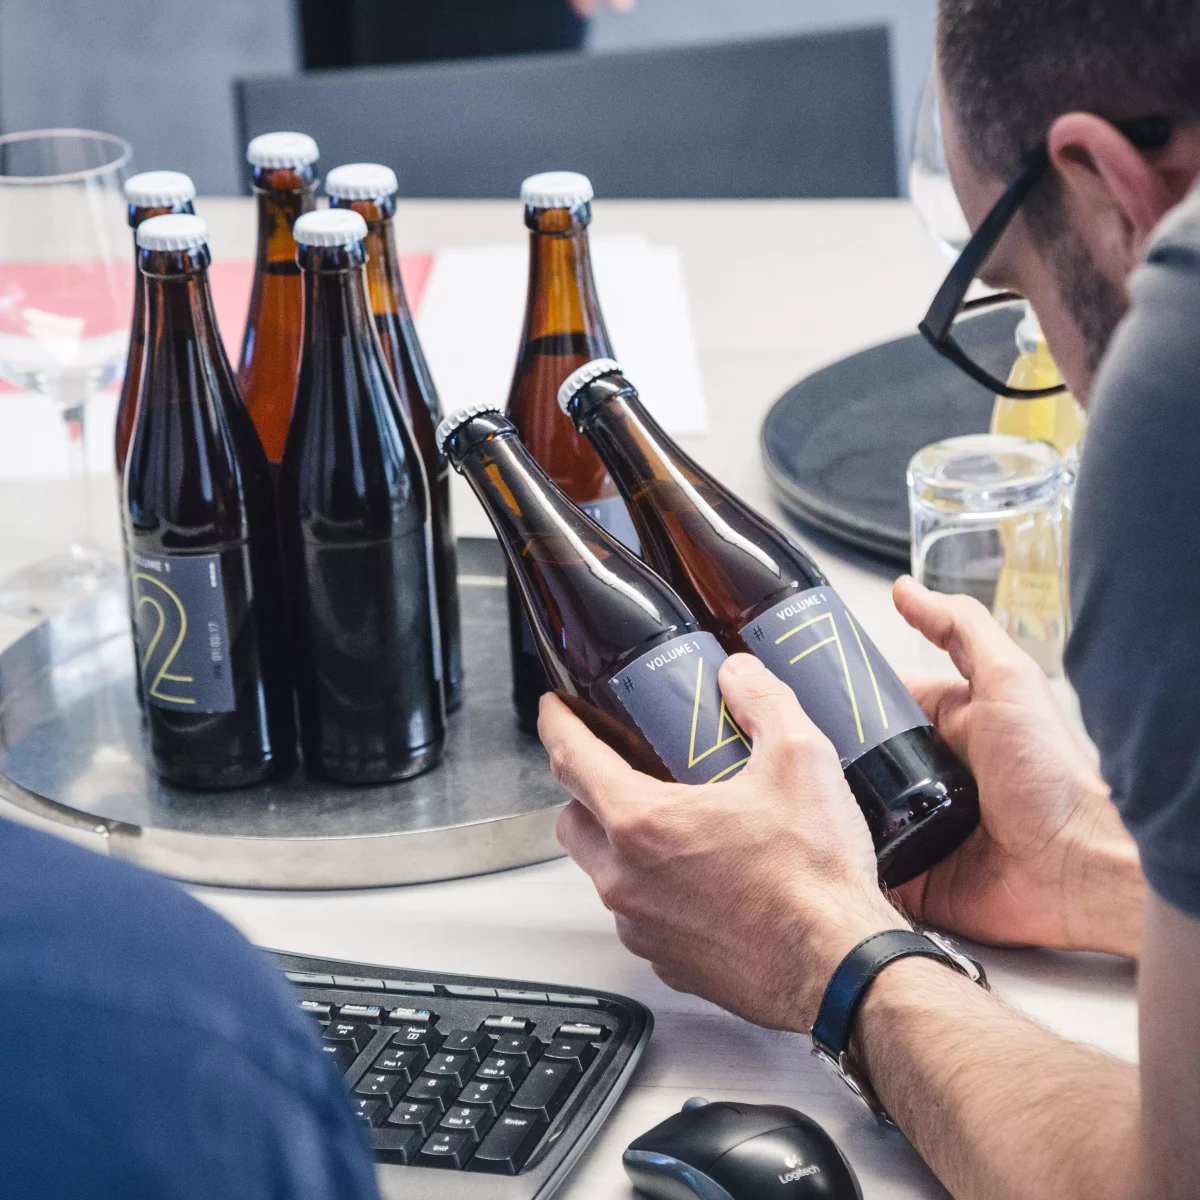 KISKA partner looks at graphic design of labels on beer brewed at KISKA